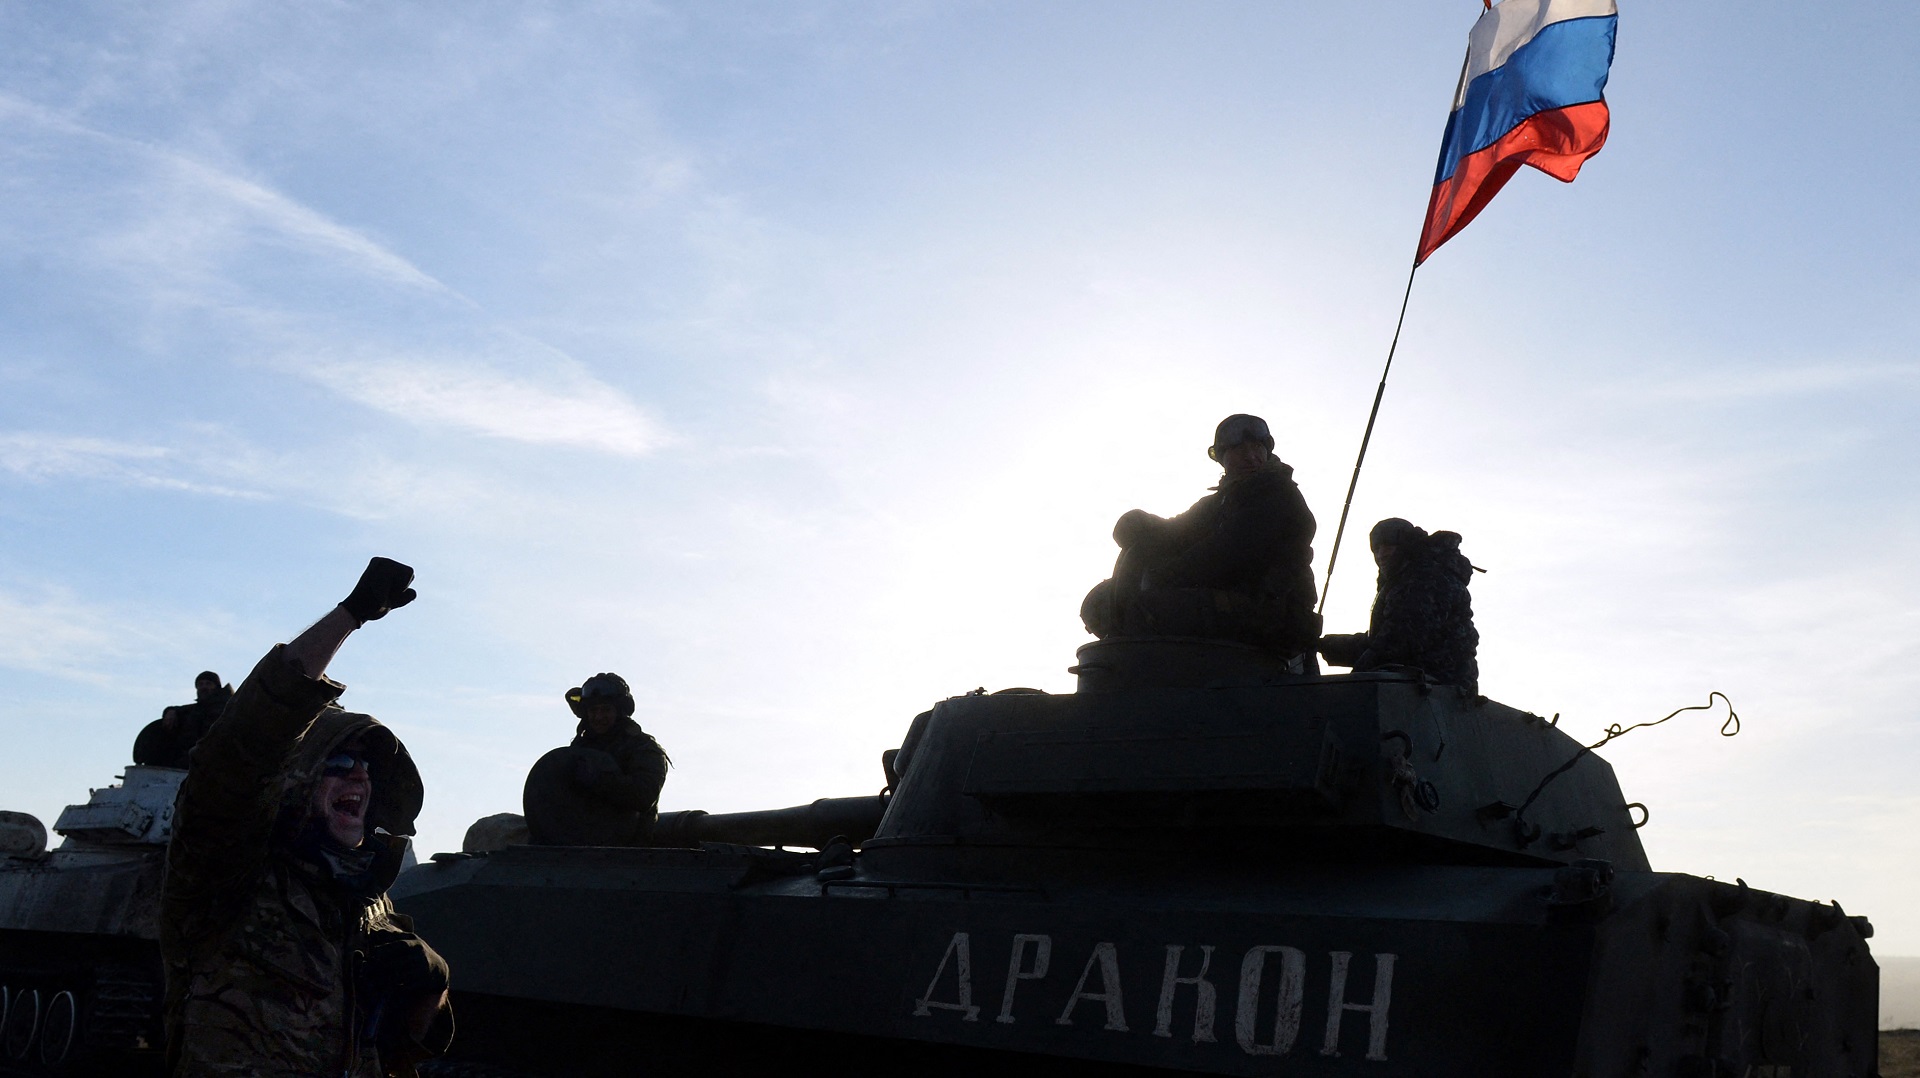 La movilización de tropas rusas en la frontera con Ucrania ha generado preocupación en los gobiernos de Europa y EEUU